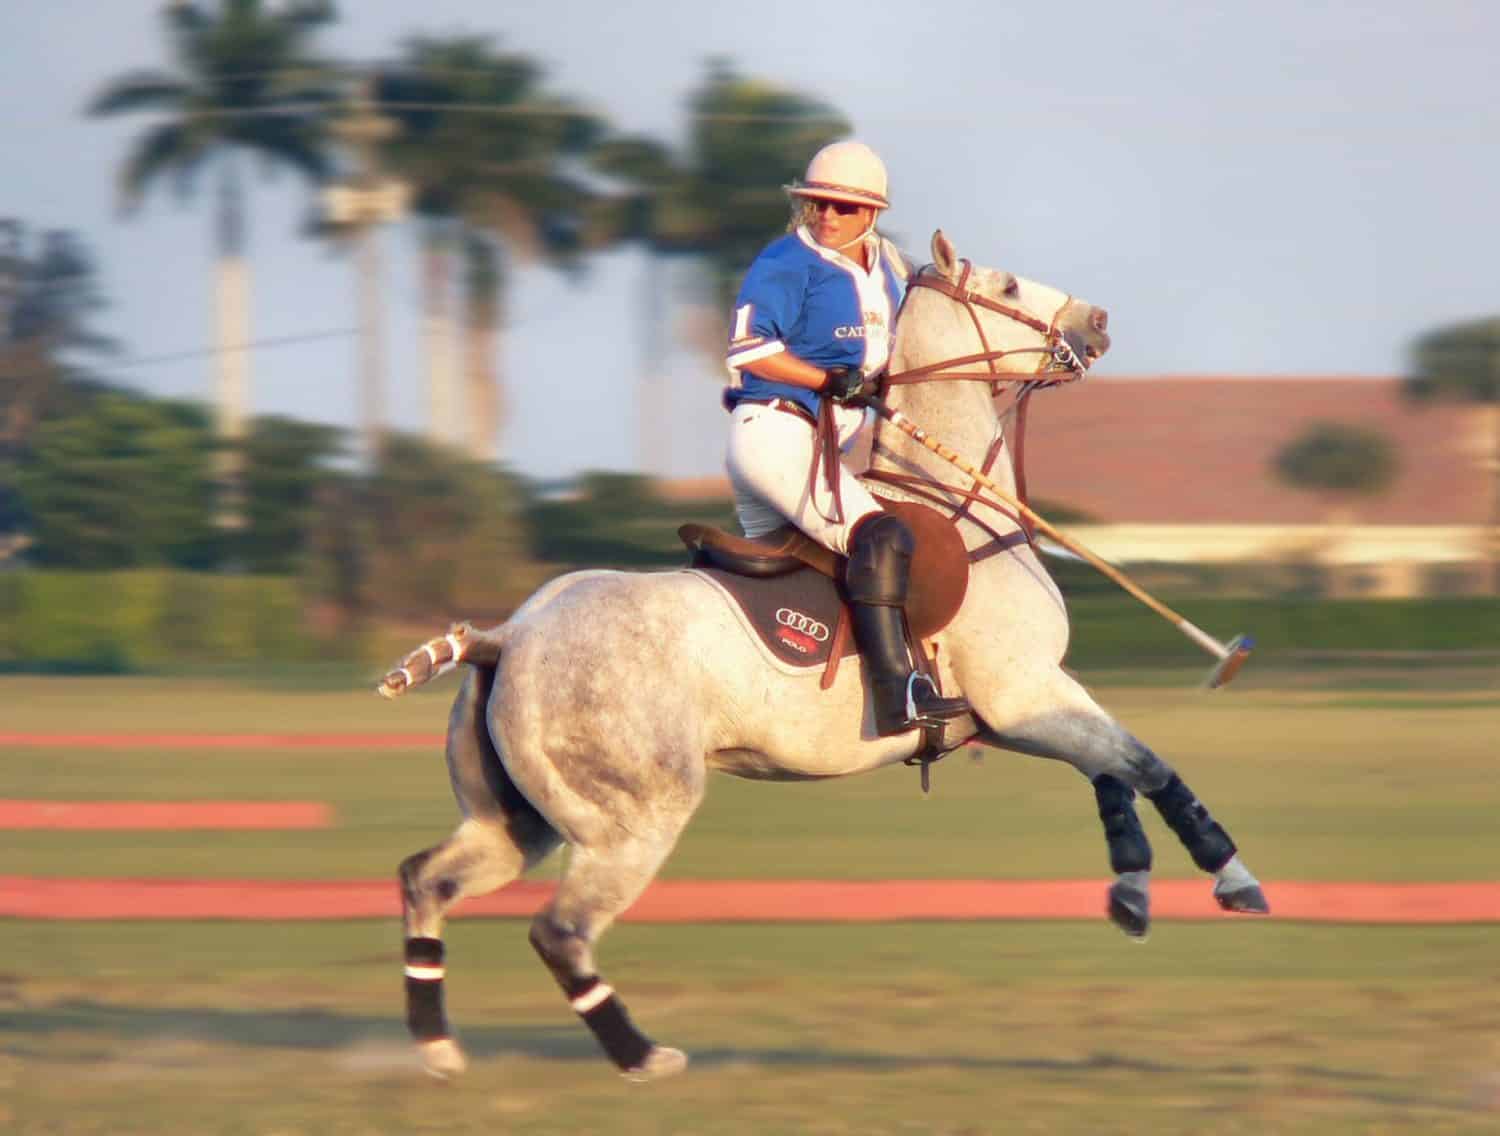 Melissa Ganzi, giocatrice di polo campionessa femminile del team Audi, in azione a Wellington, Florida.  L'immagine presenta motion blur mentre ferma il cavallo per girarsi.  Il cavallo si sta impennando leggermente.  La maglia della squadra è blu